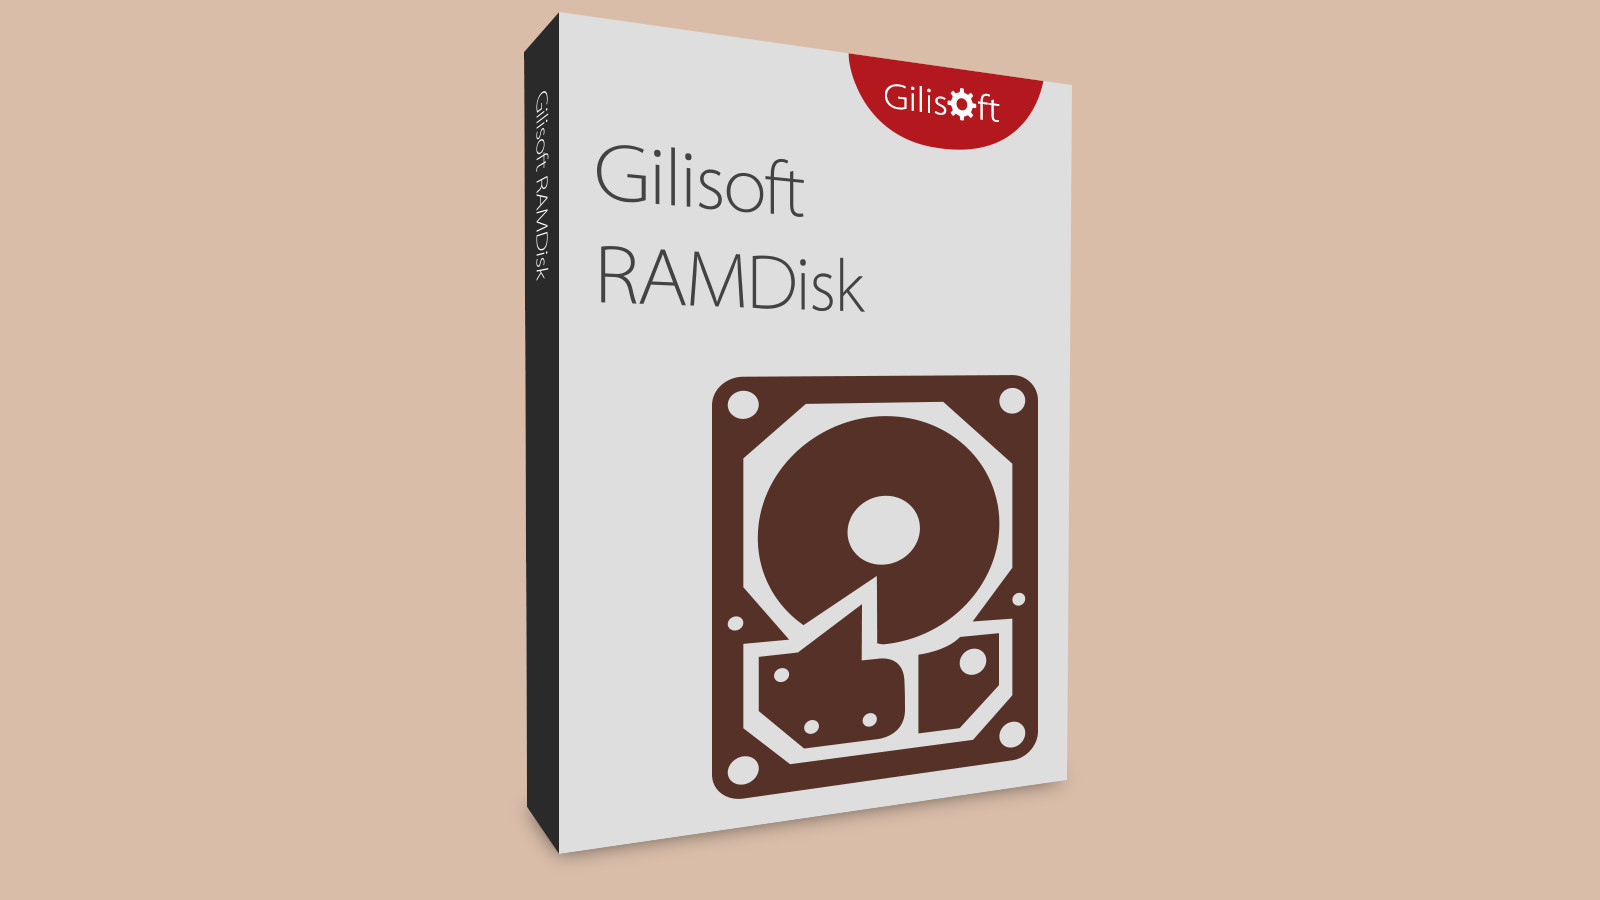 [$ 15.54] Gilisoft RAMDisk CD Key